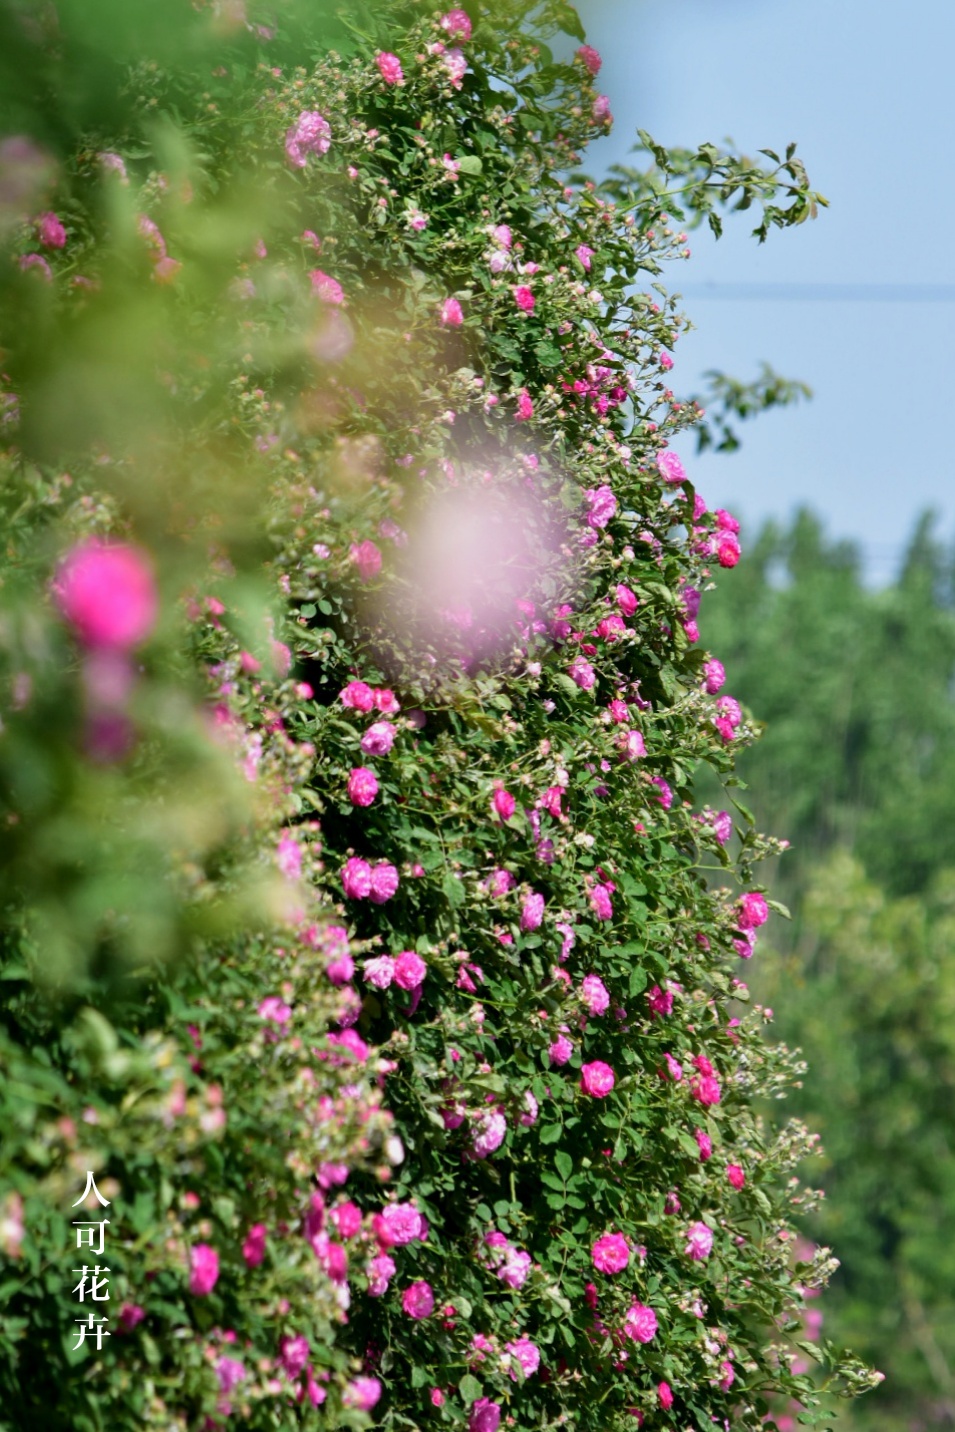 在河南师范大学的东校区,学校的围墙上挂满了密密的蔷薇藤